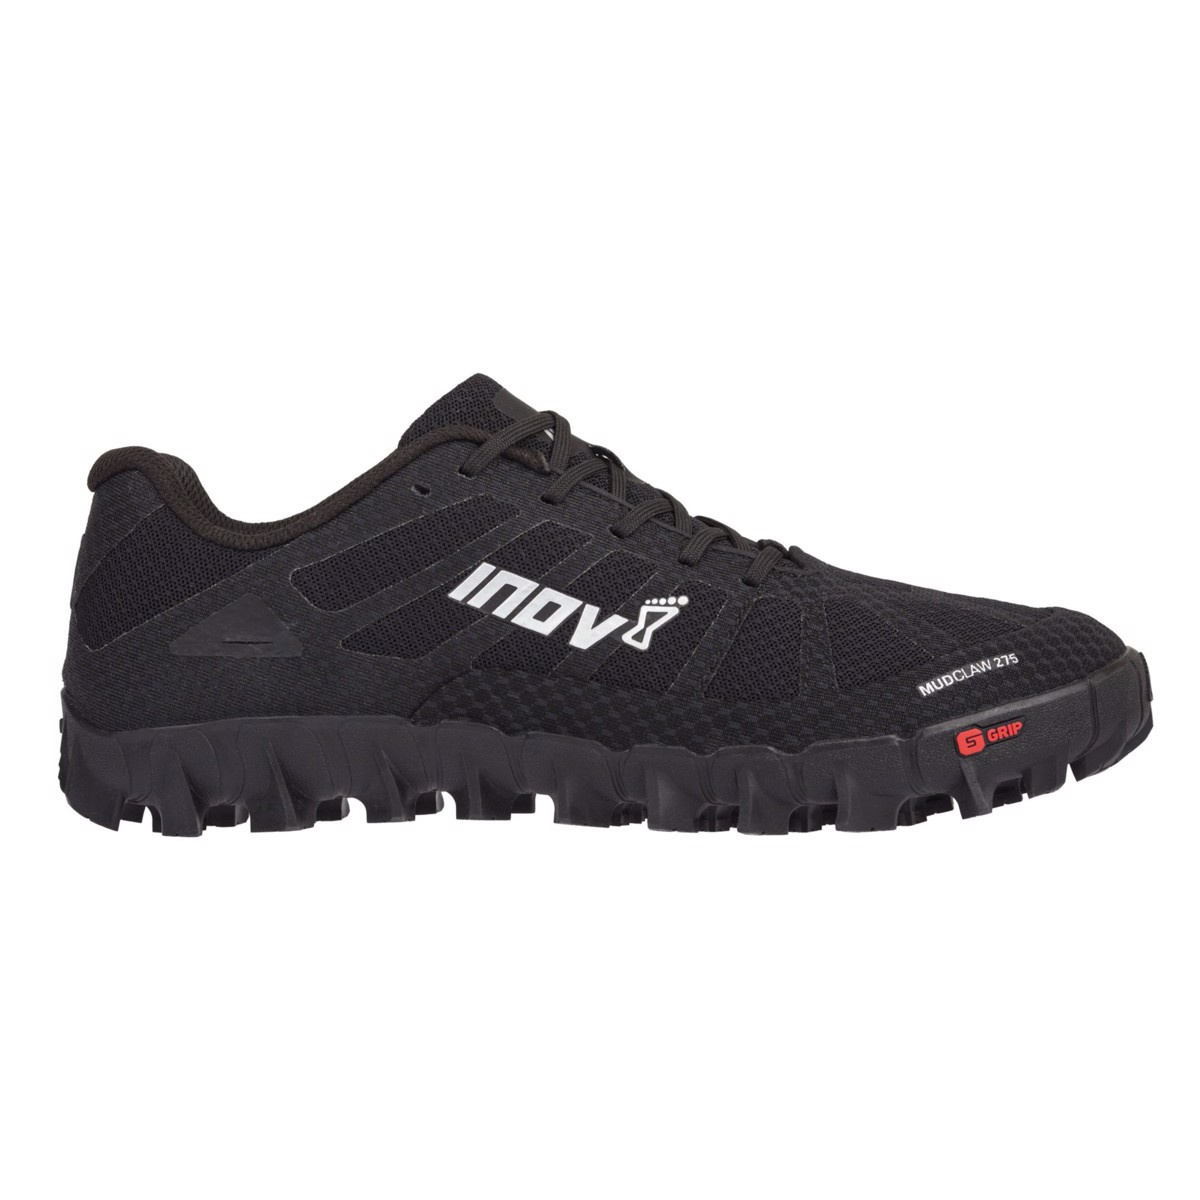 Pánské / dámské krosové boty Inov-8 Mudclaw 275 (P) černá/stříbrná 11,5 UK